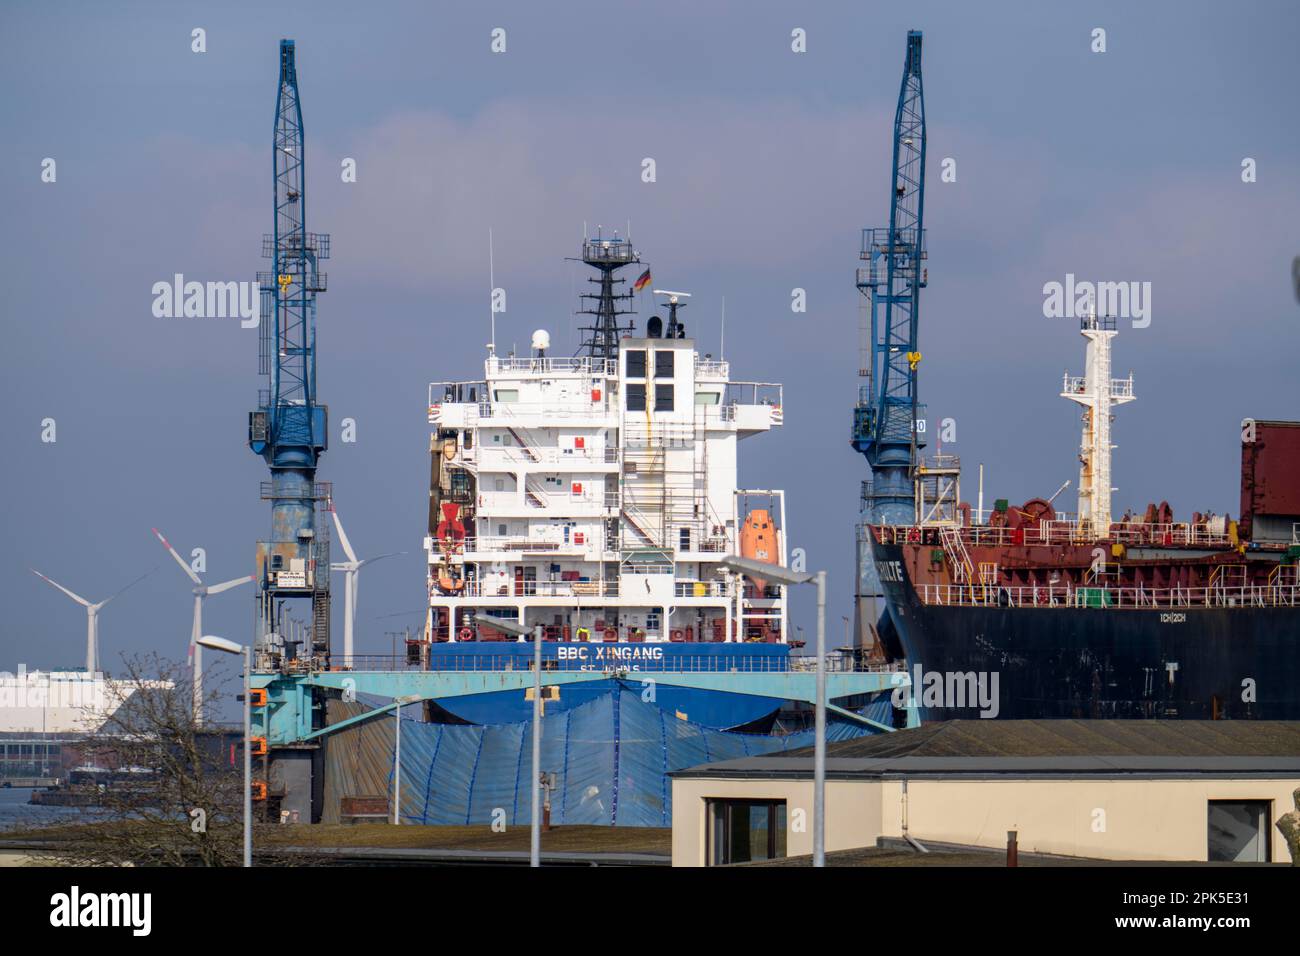 Werft Dock 5, cargo BBC Xingang Dry dock, cargo Adam Schulte, chantier naval dans le port d'outre-mer de Bremerhaven, Brême, Allemagne Banque D'Images